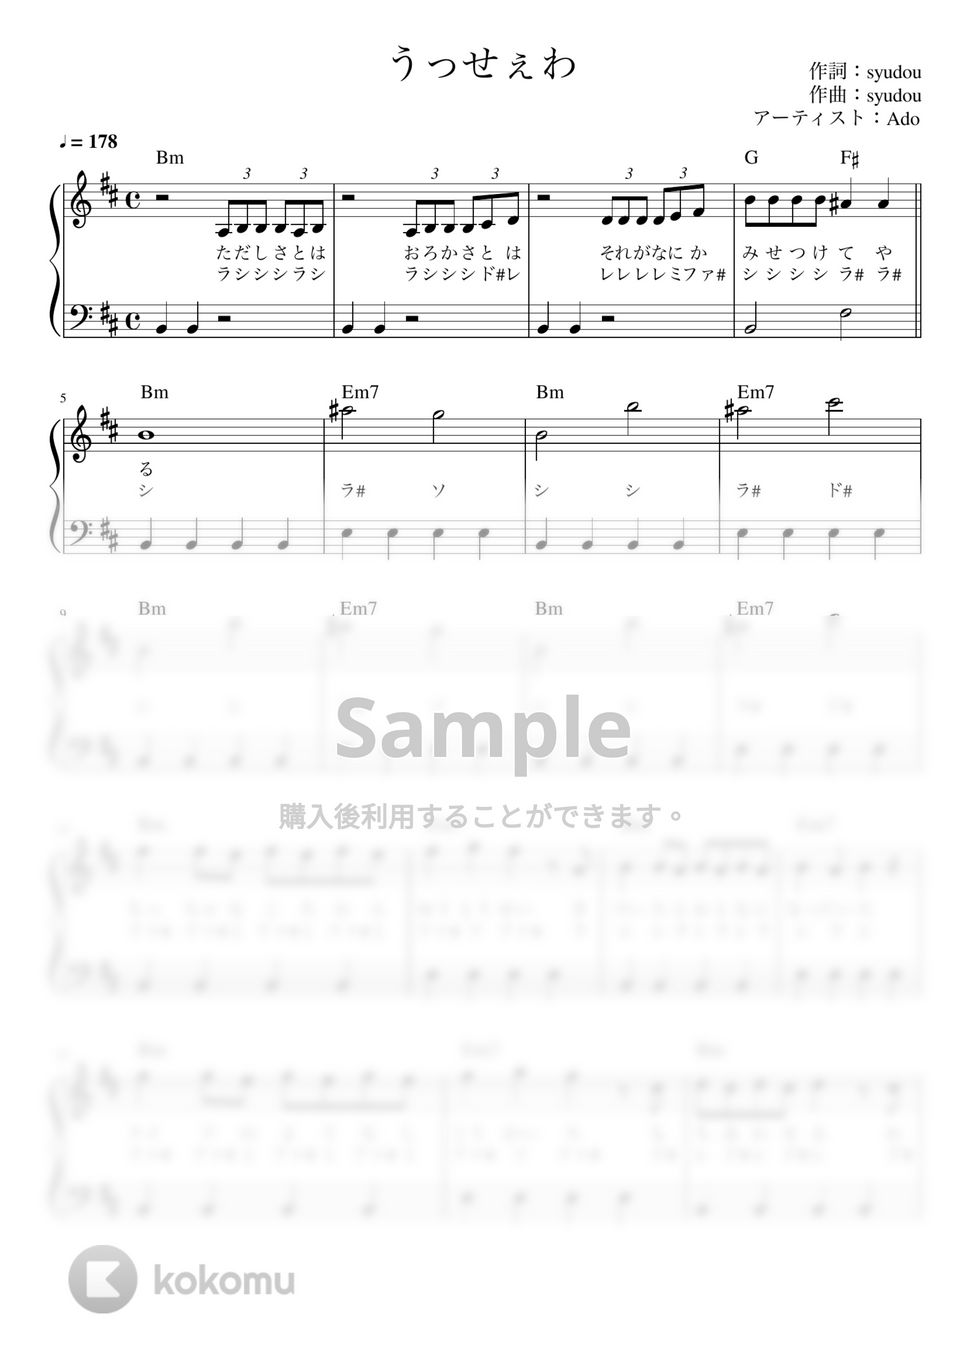 Ado - うっせぇわ (かんたん / 歌詞付き / ドレミ付き / 初心者) by piano.tokyo